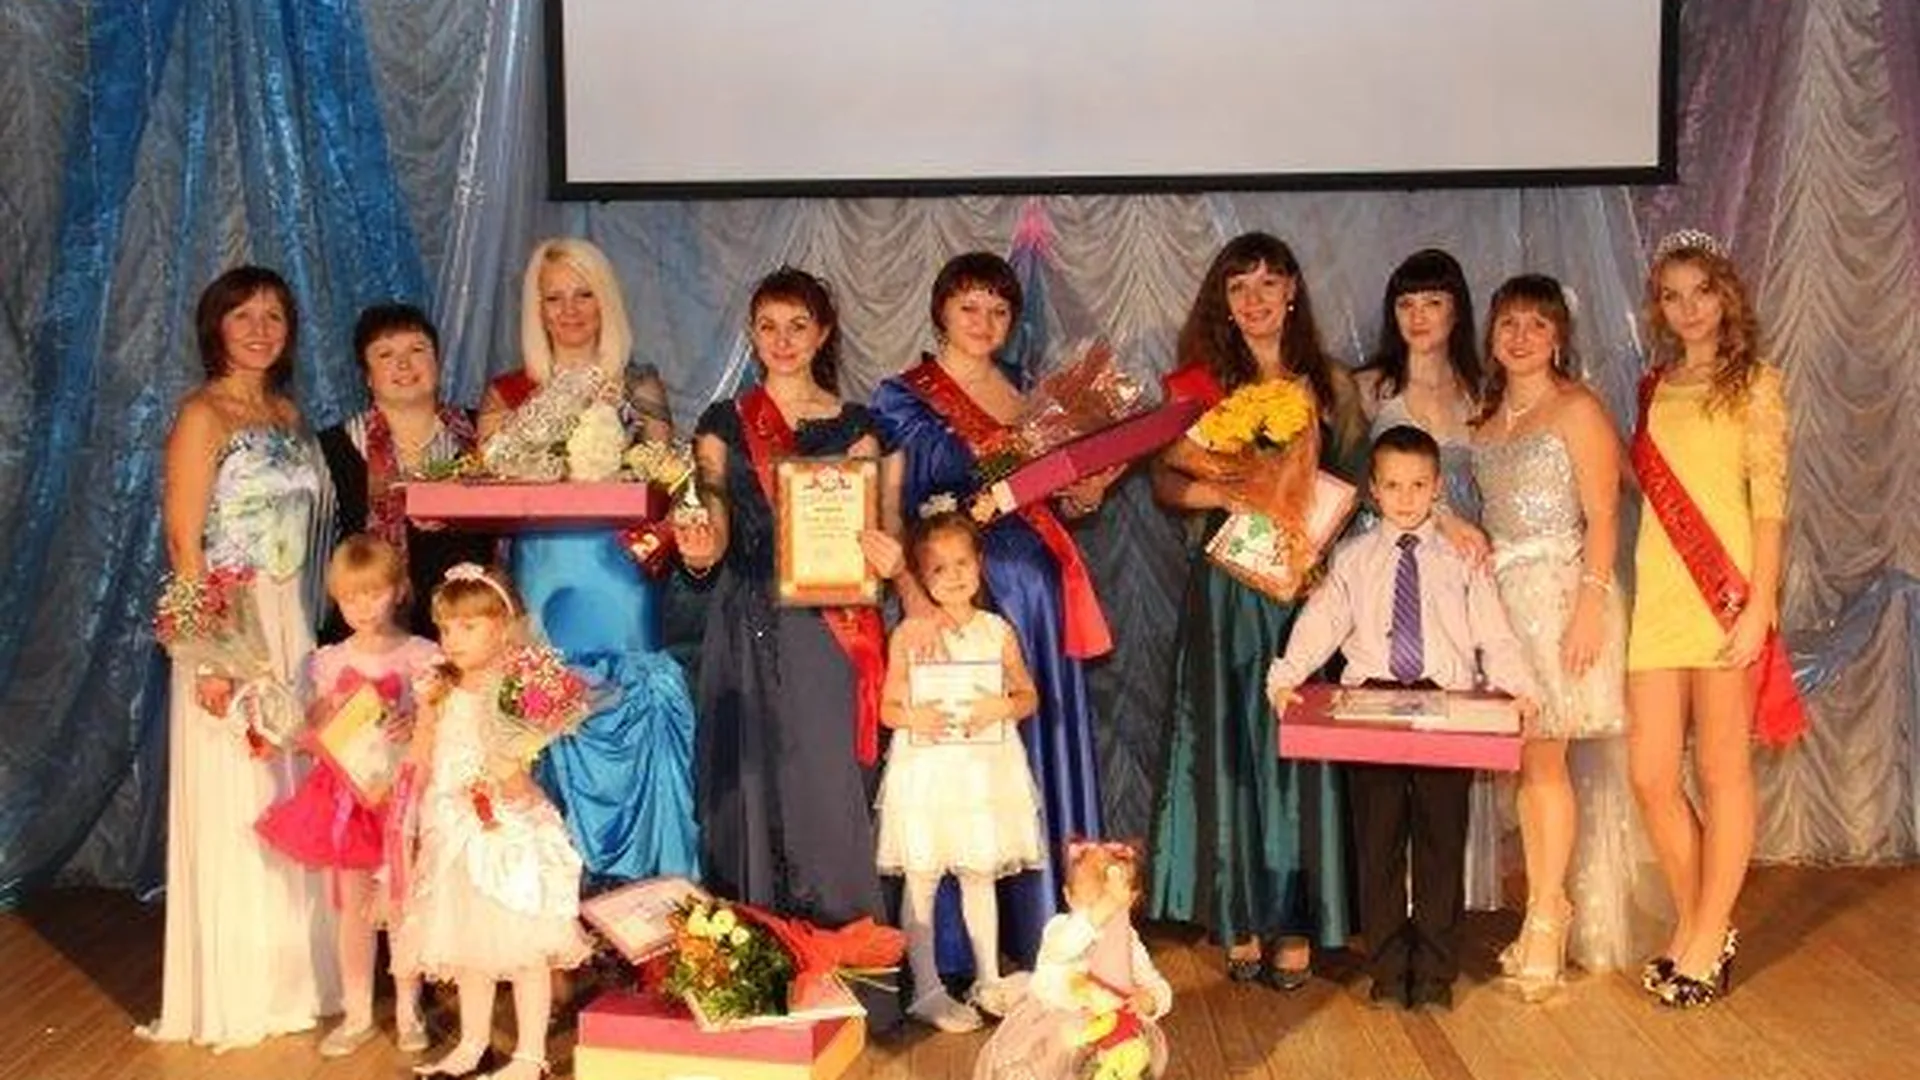 Лучших мам Балашихи выбрали на конкурсе «Супер-мама 2012»